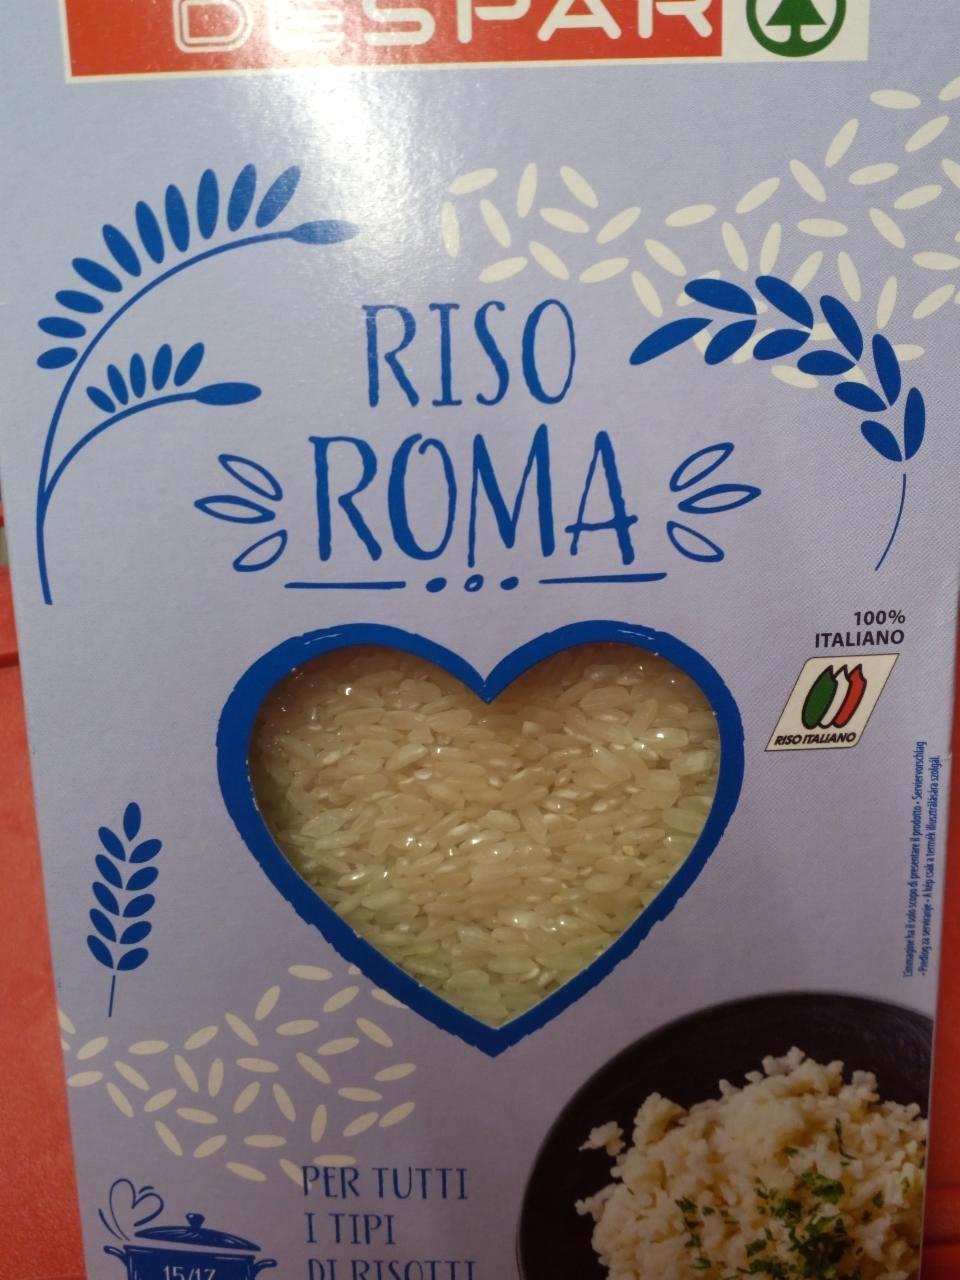 Képek - Hosszúszemű rizs Riso Roma Despar